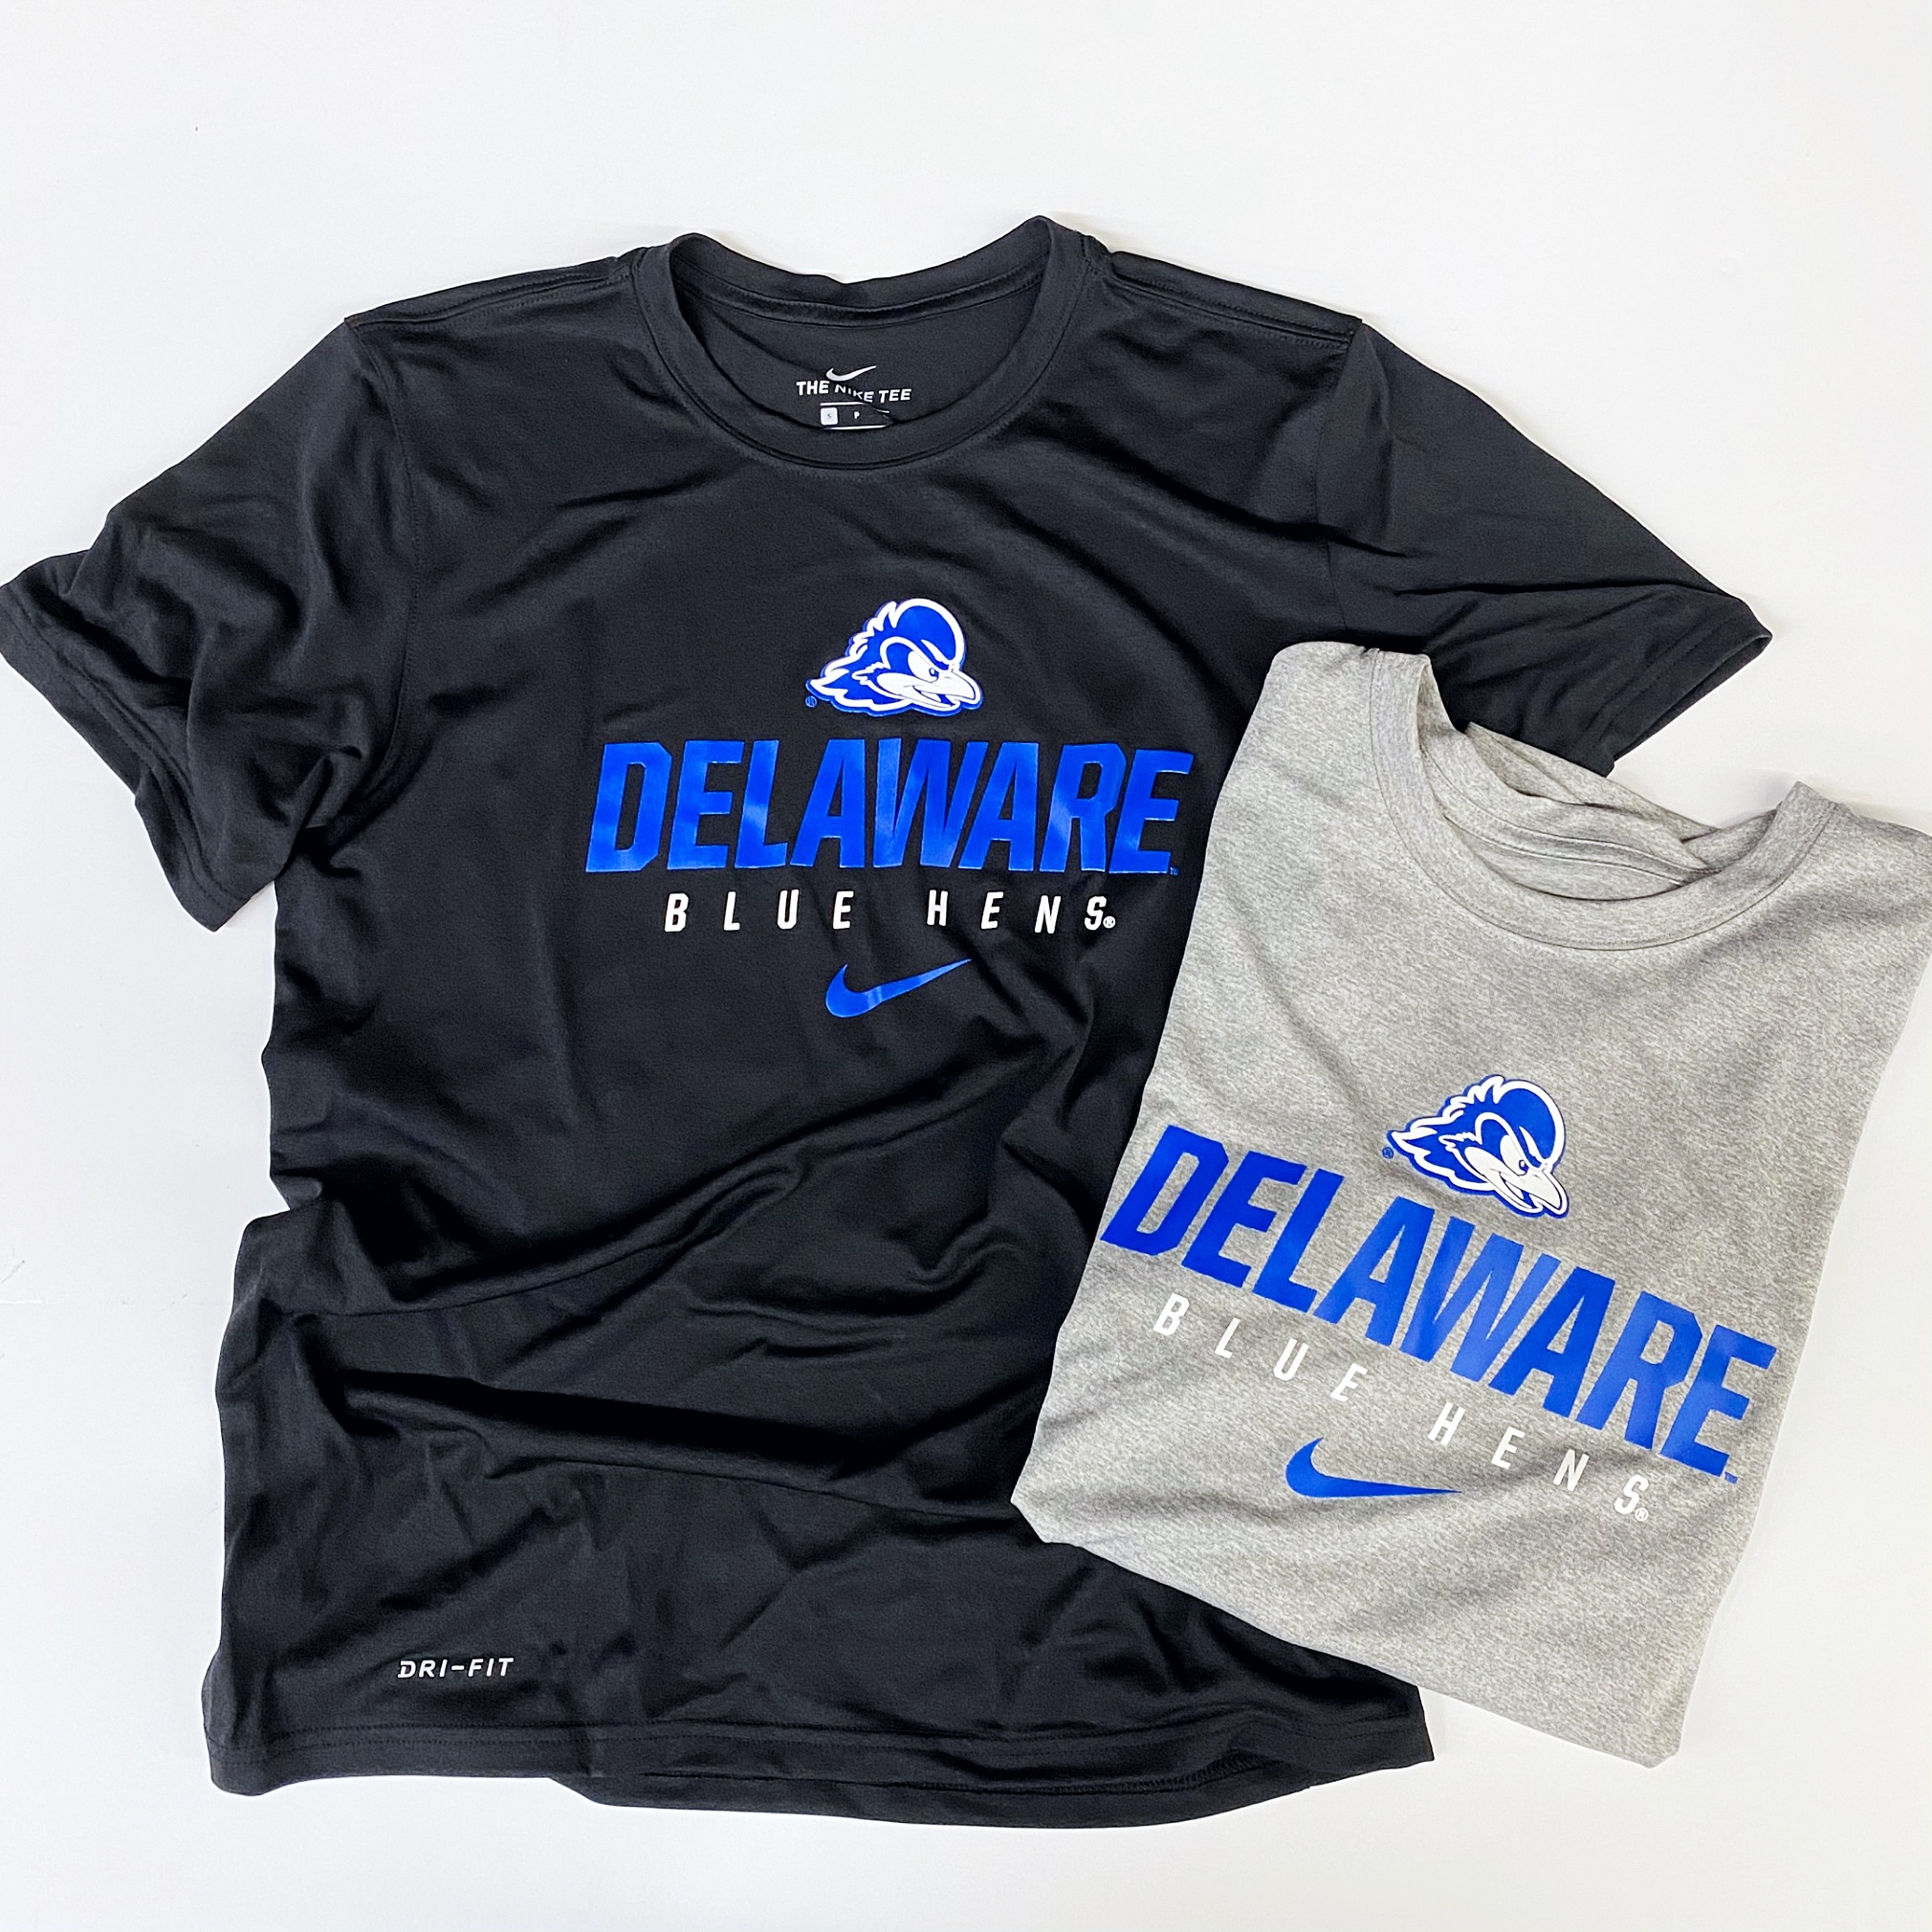 University of Delaware Blue Hens Nike S/S Performance T-shirt